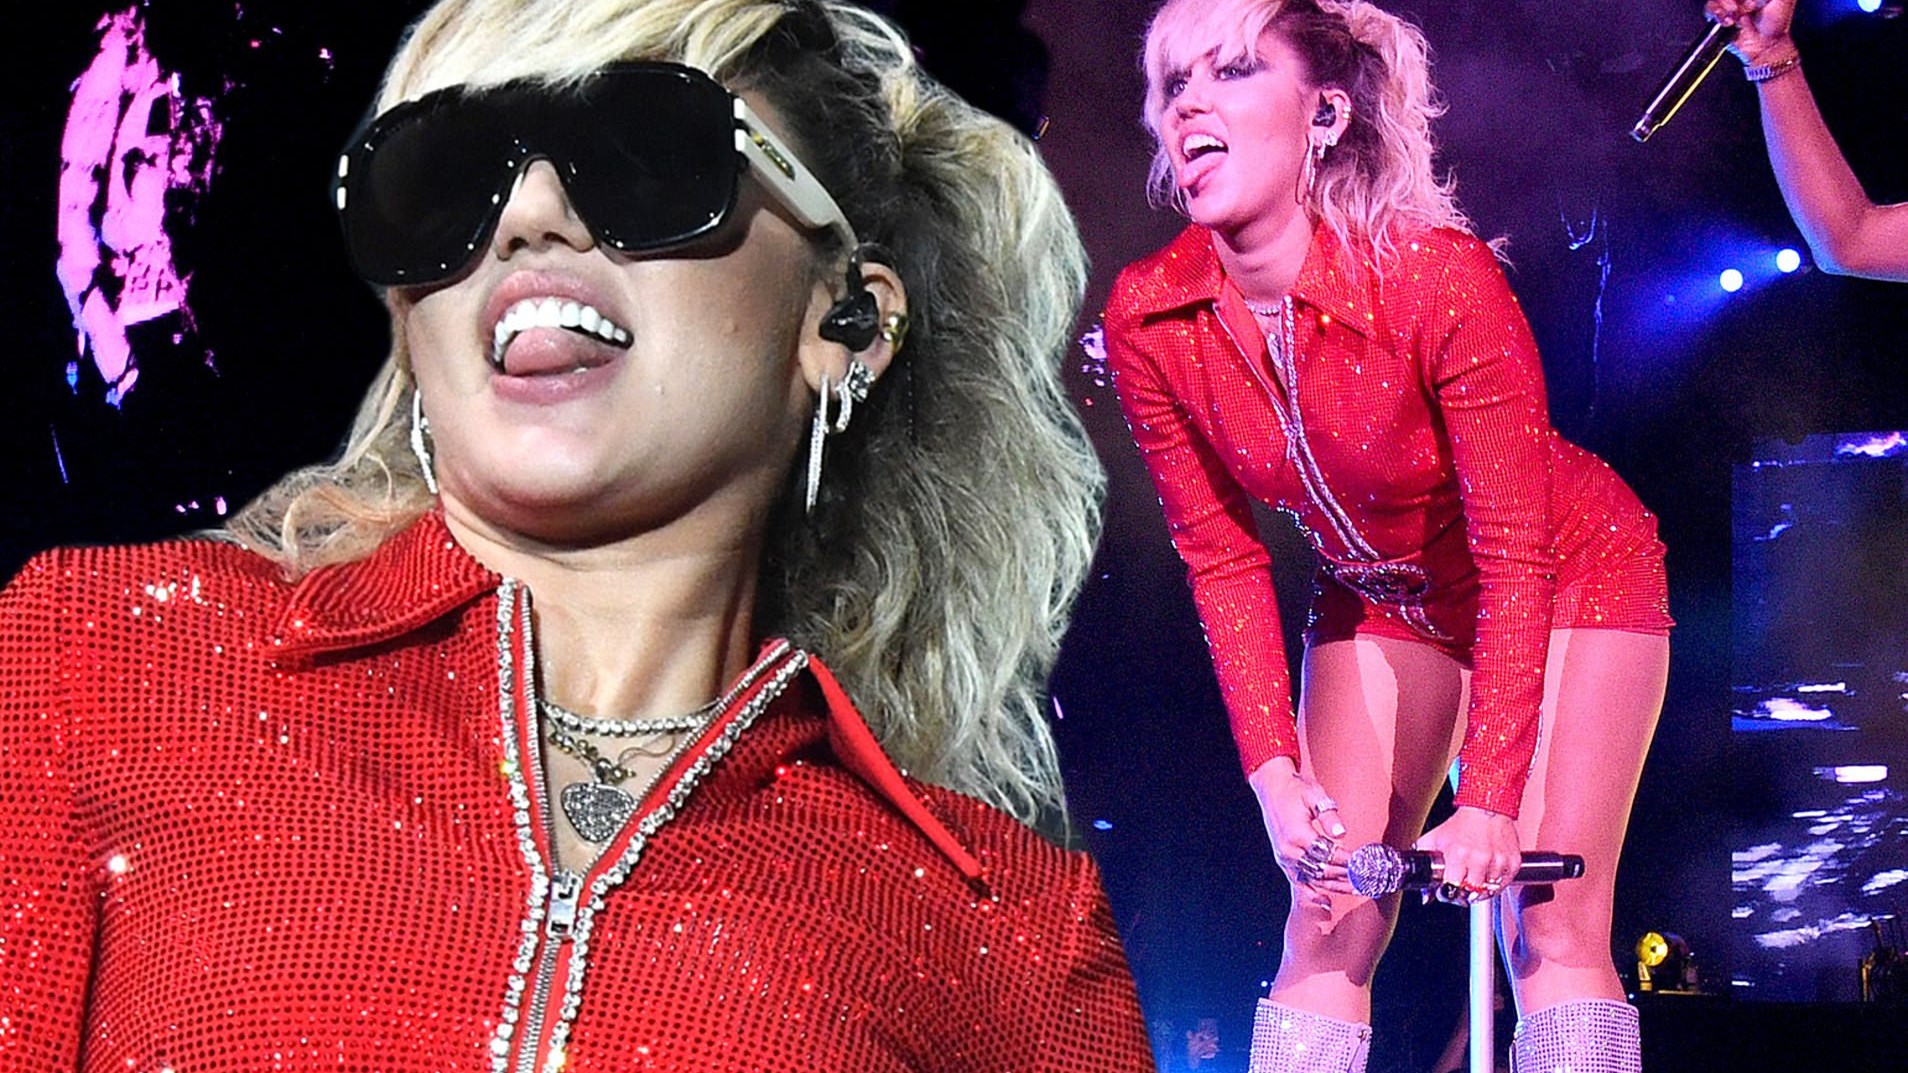 “Τα έσπασε” πάλι η Miley Cyrus στο φεστιβάλ Lollapalooza